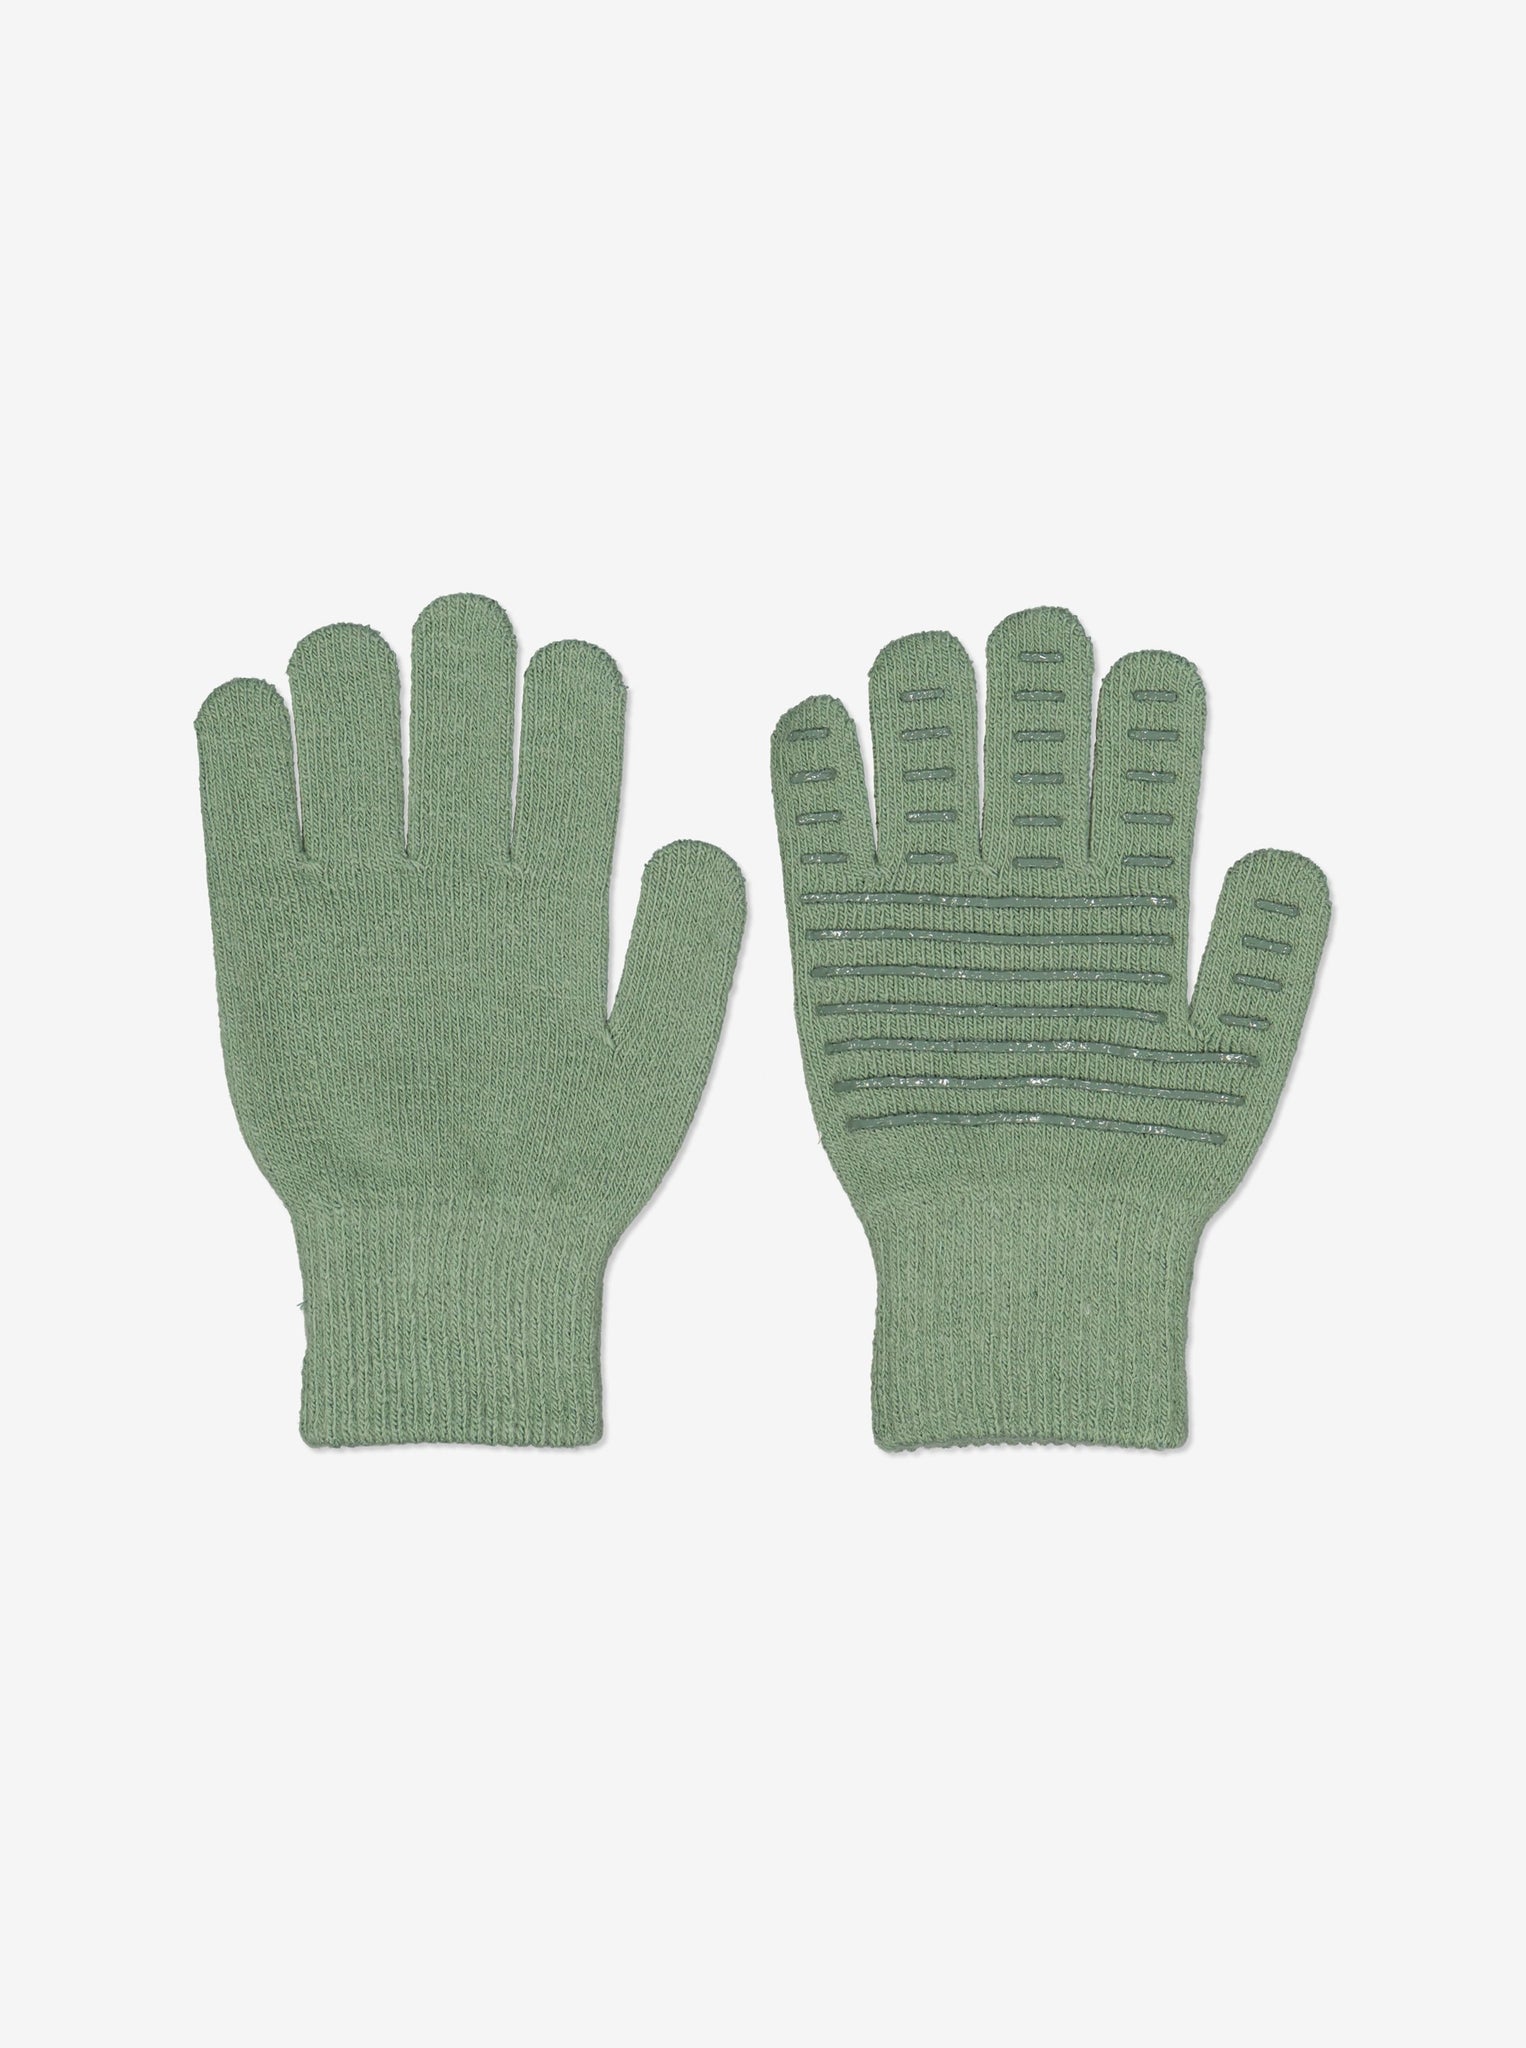 Green Kids Magic Gloves from Polarn O. Pyret Kidswear. 